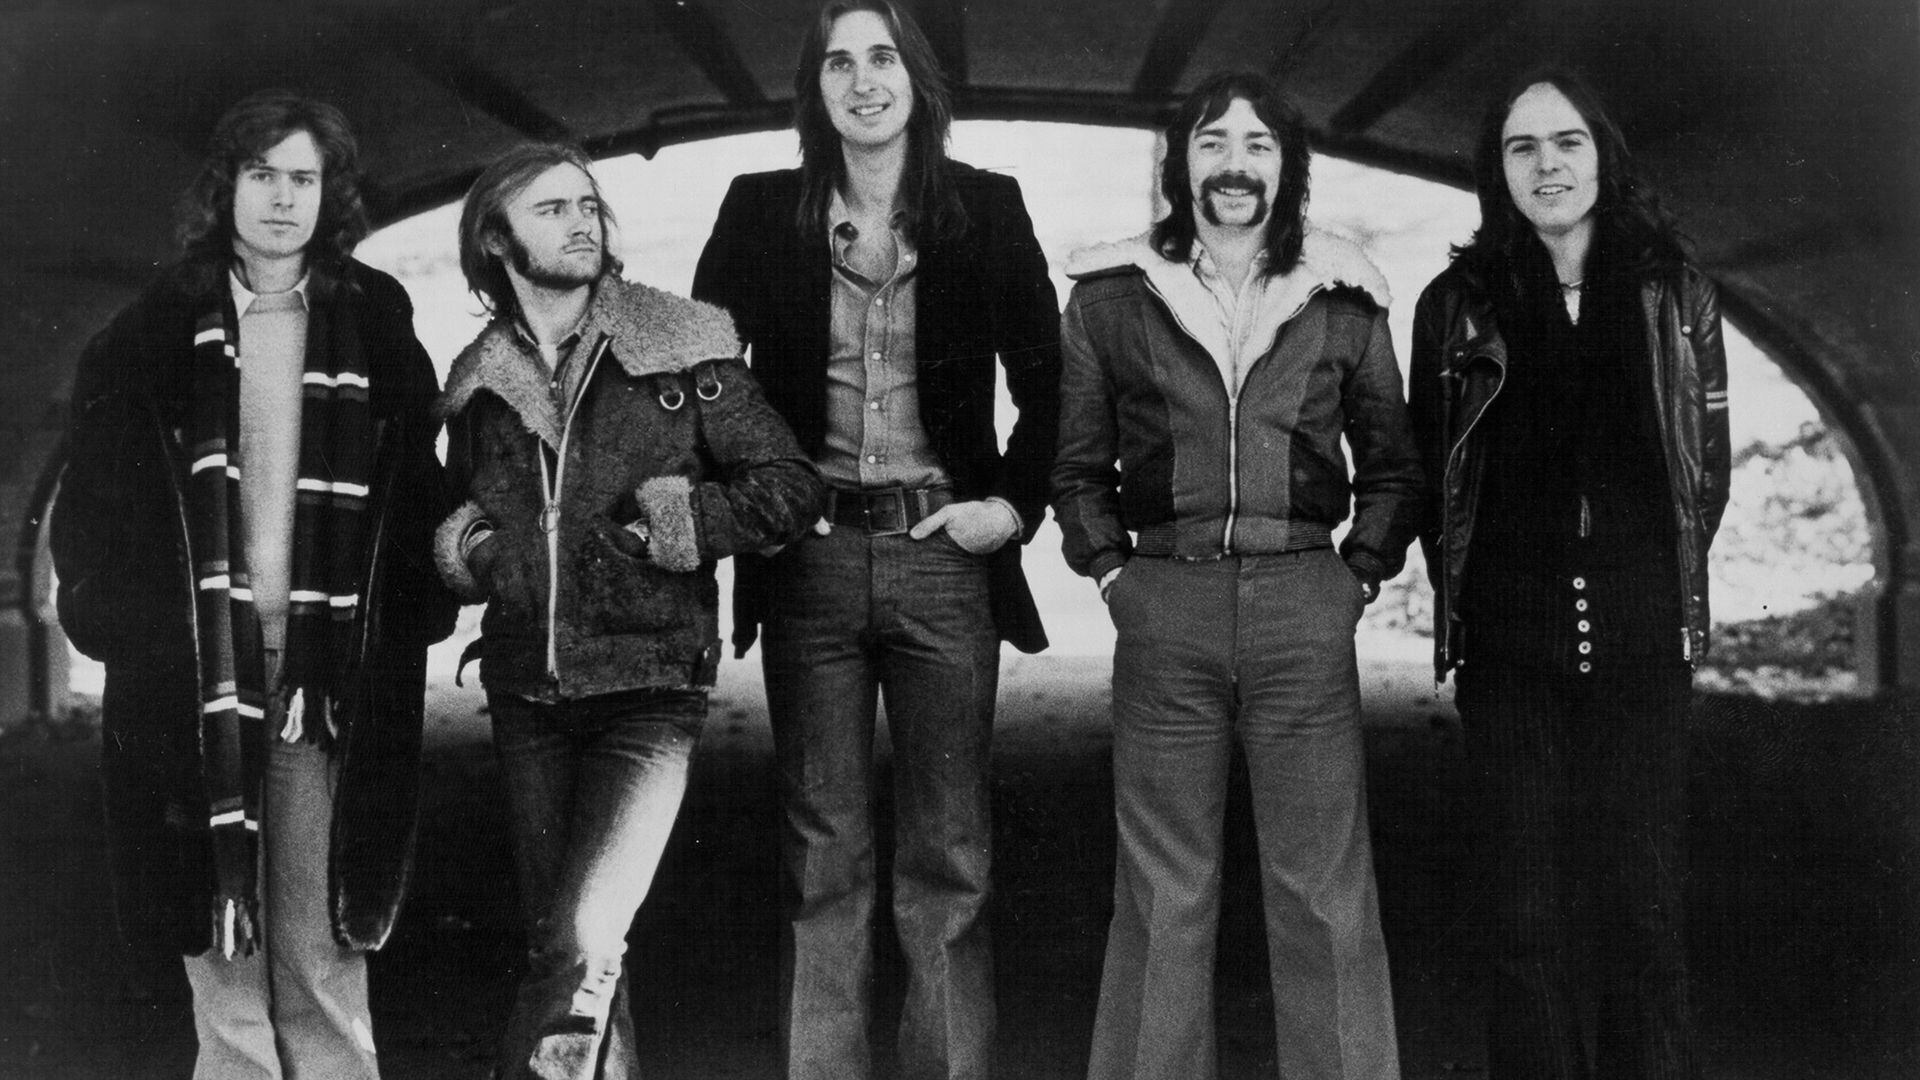 De izquierda a derecha: Tony Banks, Phil Collins, Mike Rutherford, Steve Hackett y Peter Gabriel, la formación más icónica de Génesis (Foto: Getty / Michael Ochs Archives)